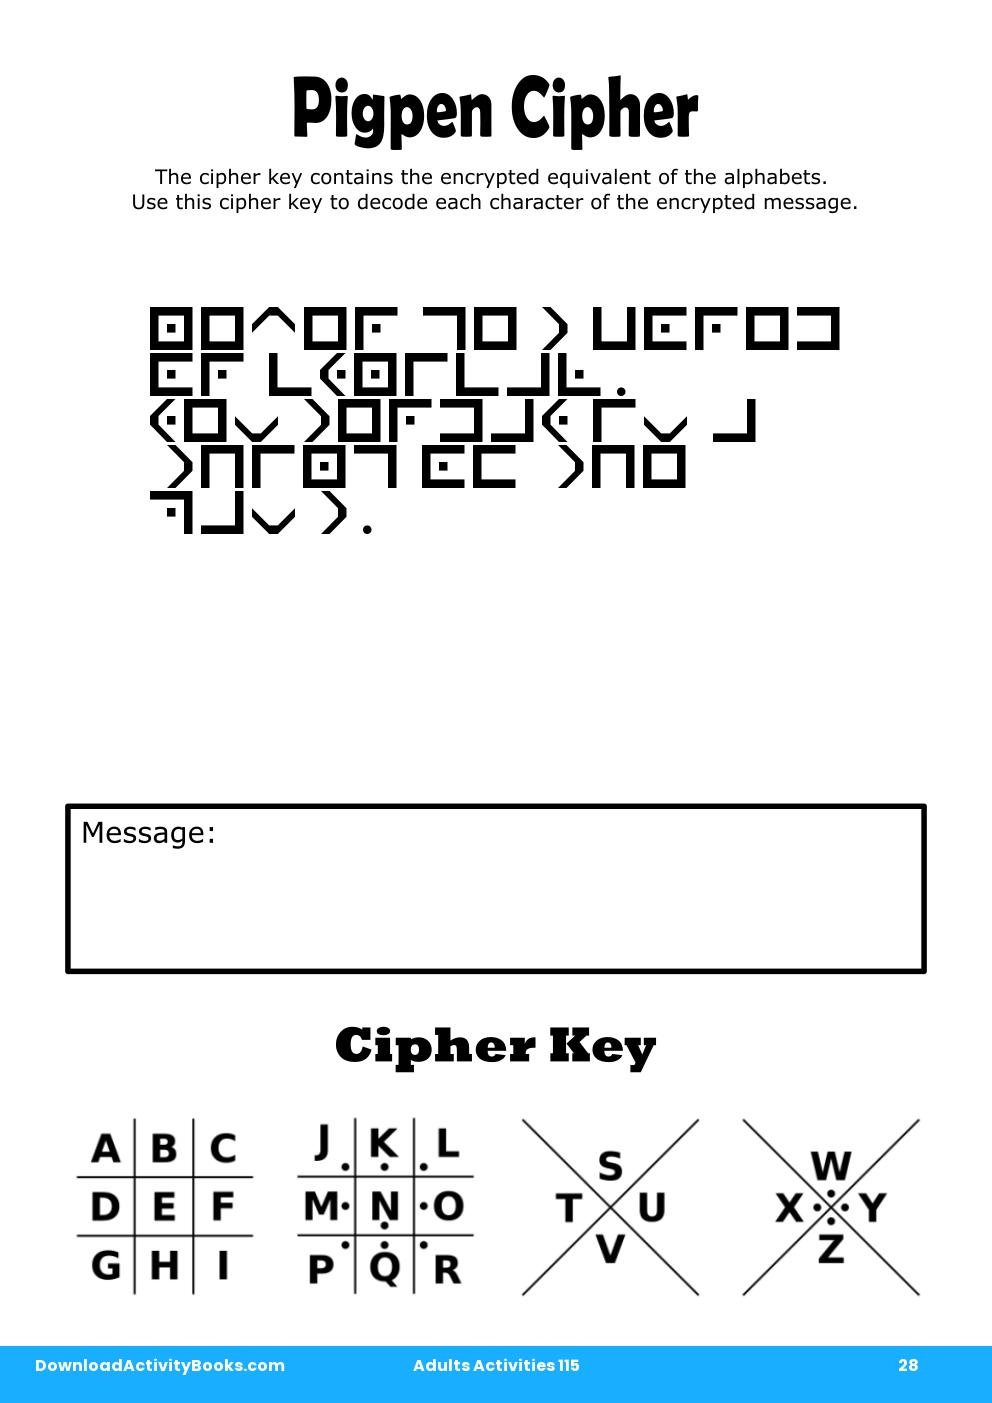 Pigpen Cipher in Adults Activities 115